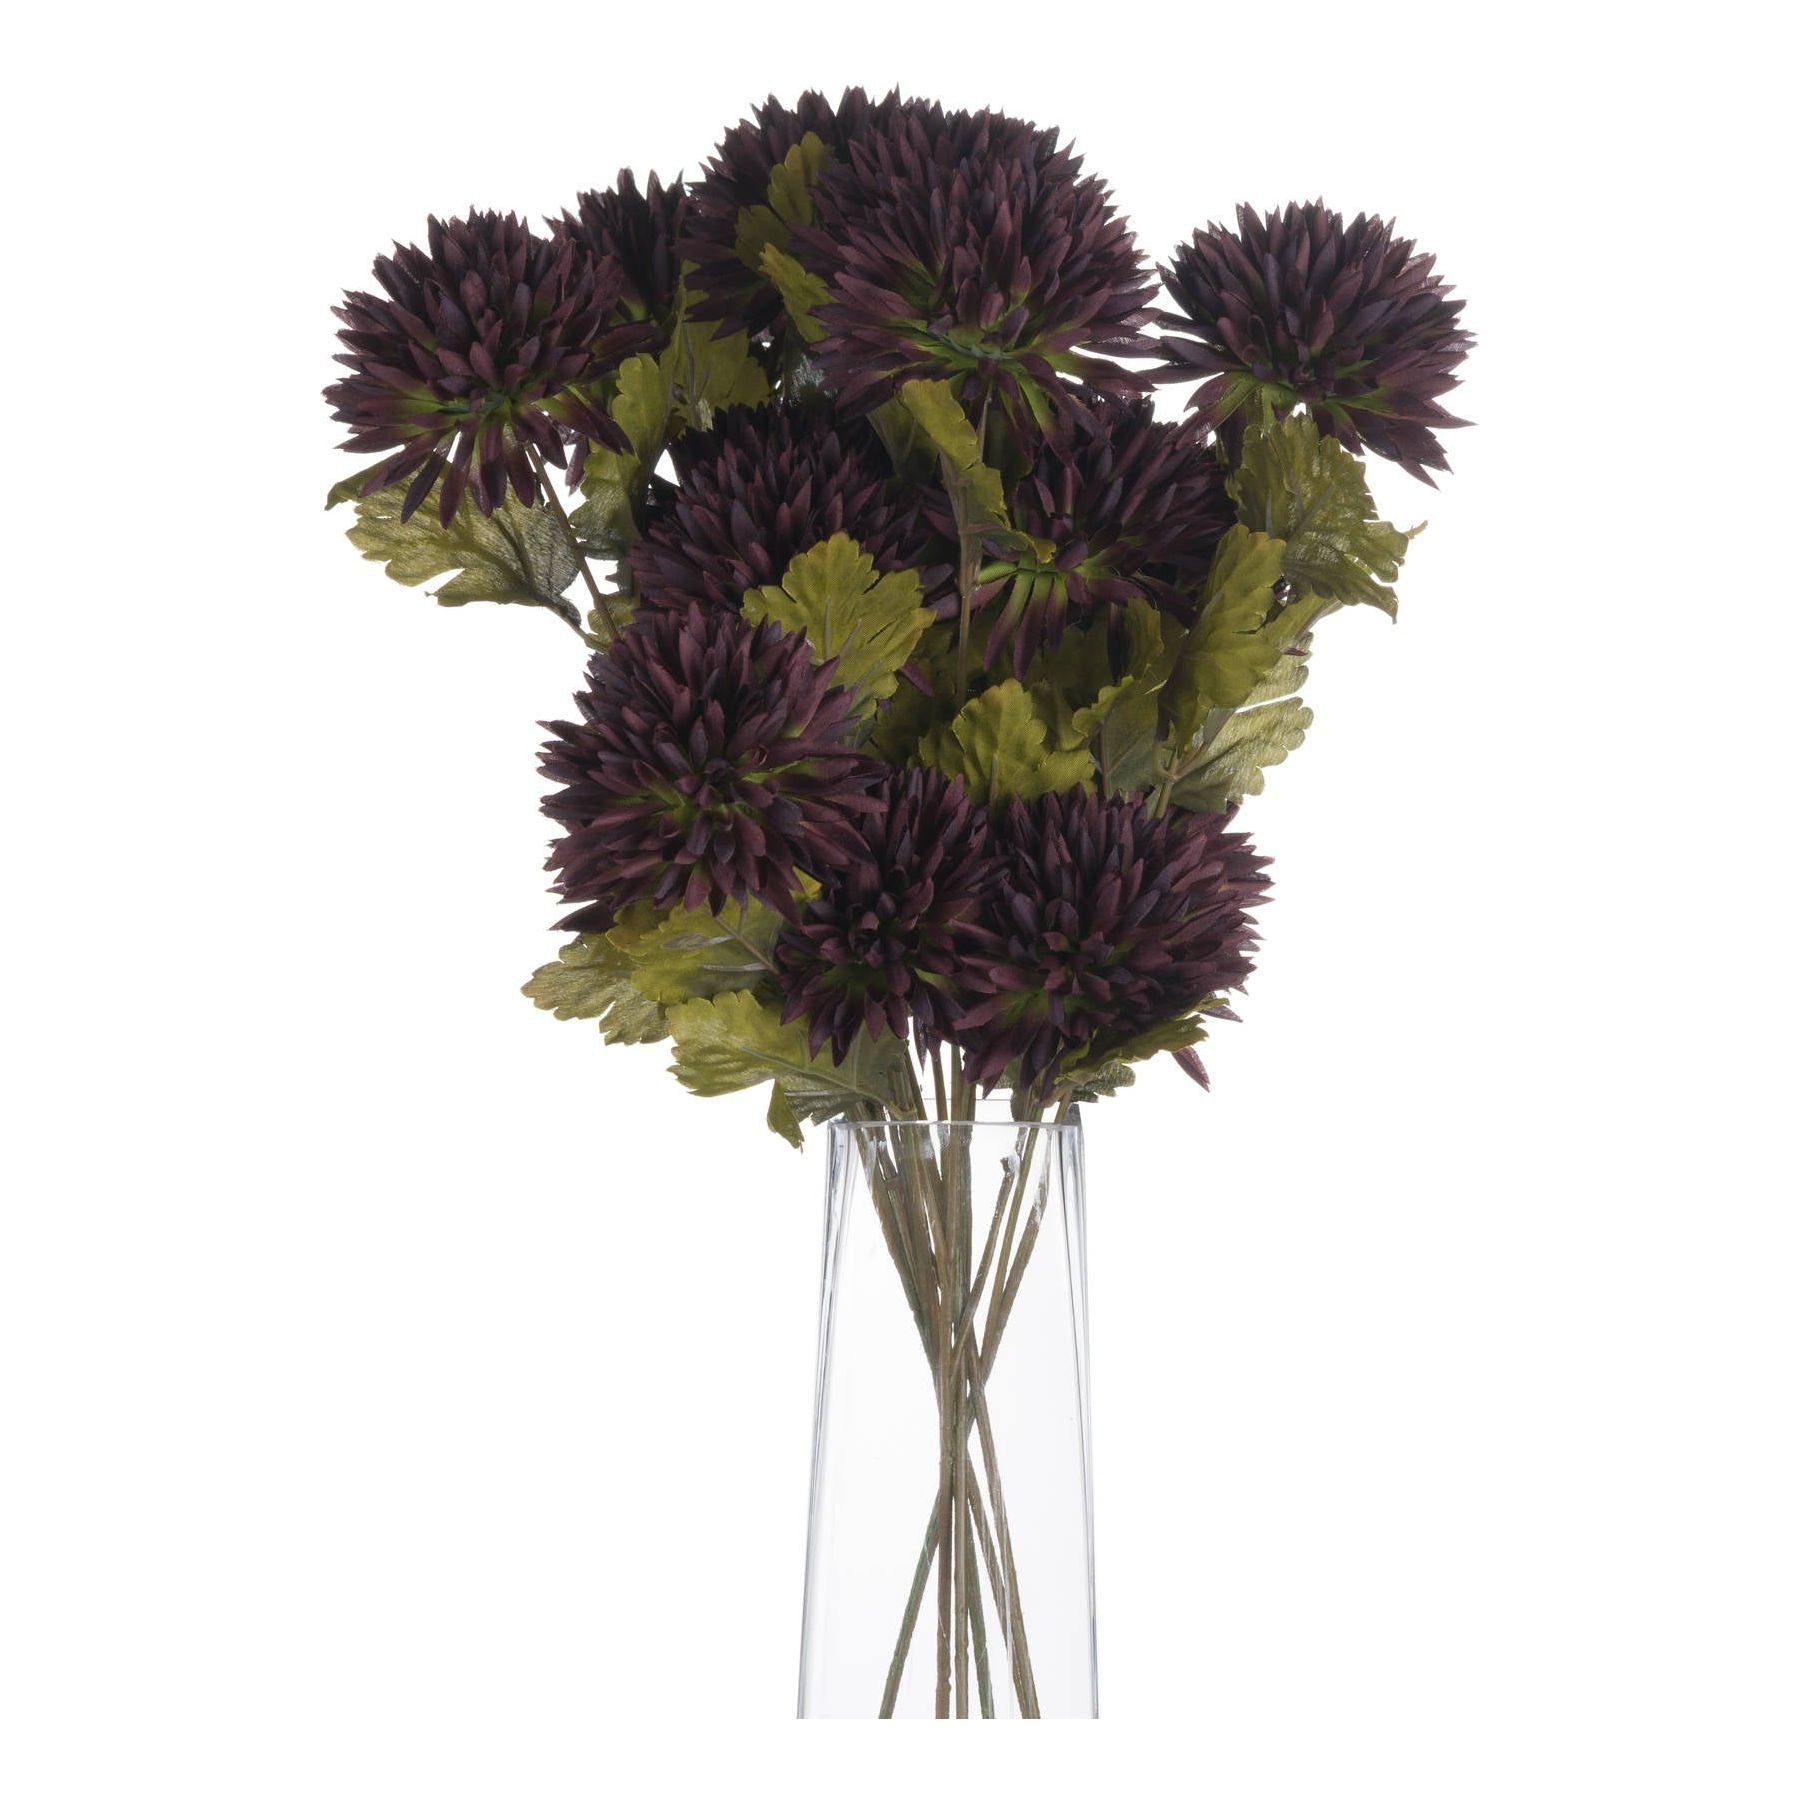 Chocolate Chrysanthemum - Ashton and Finch